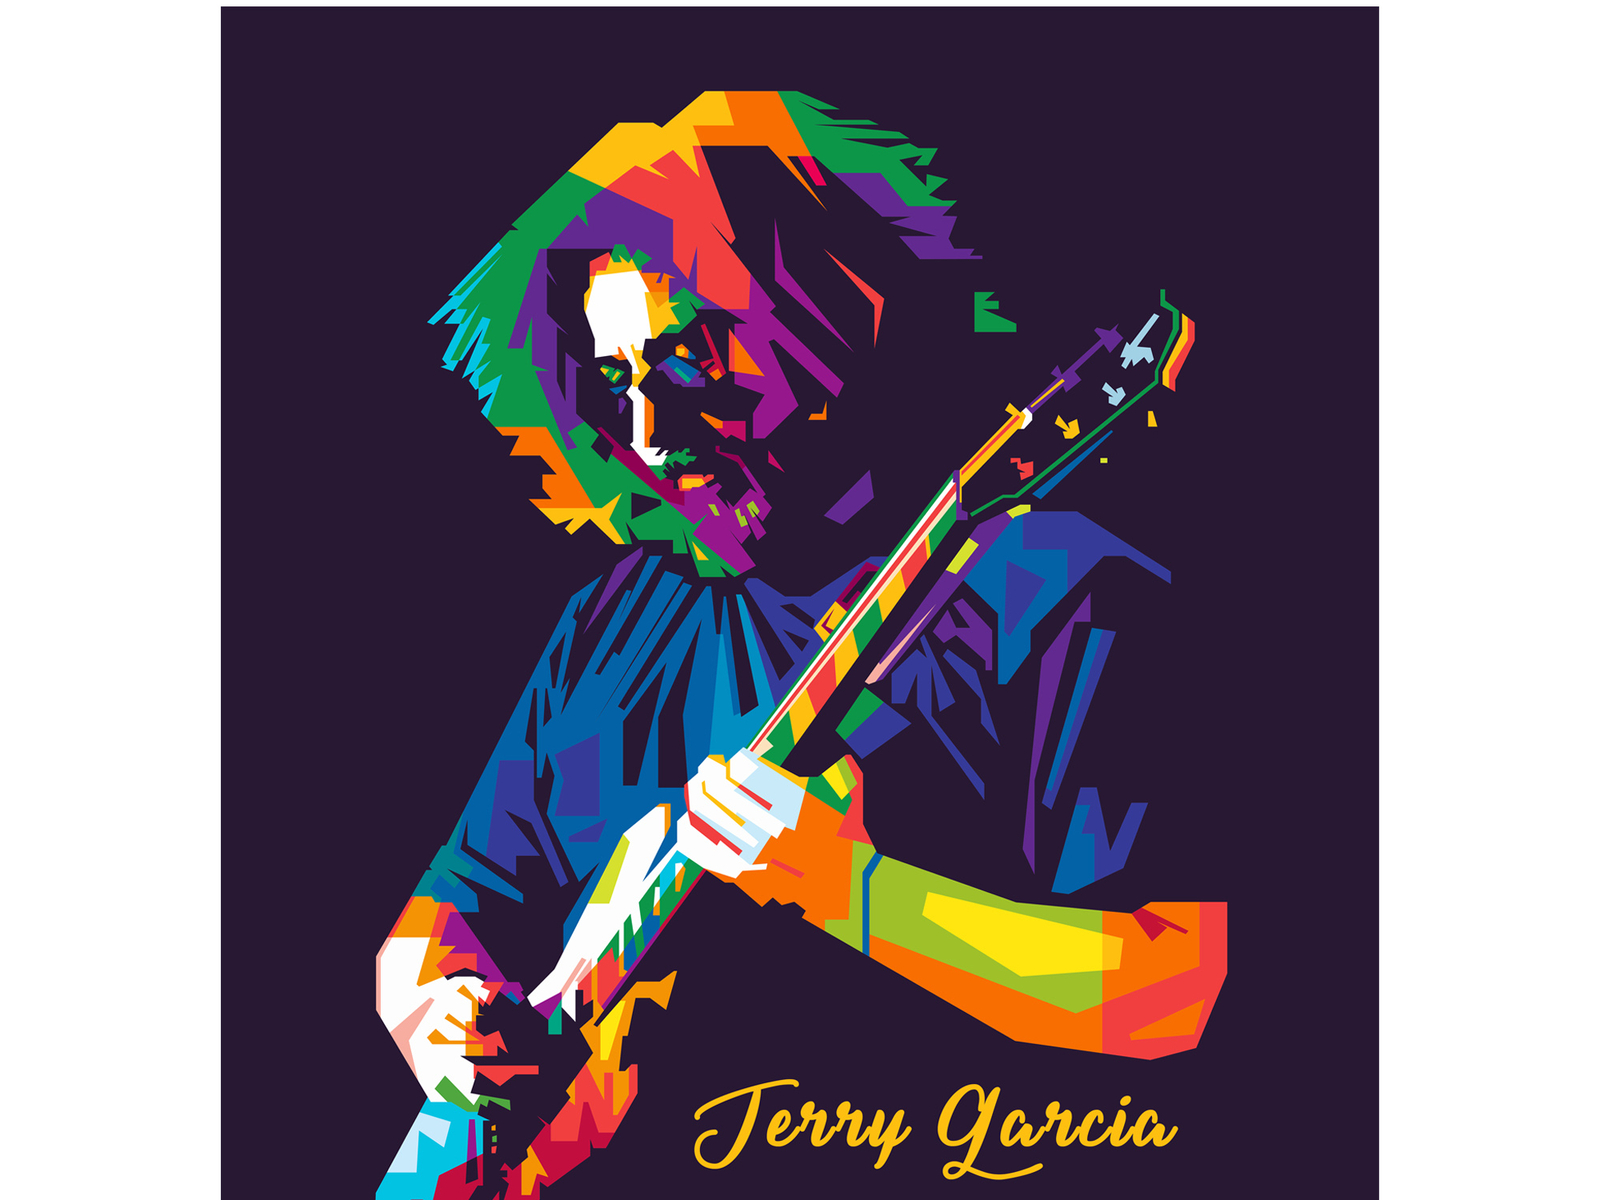 Jerry Garcia by Nofa Aji Zatmiko on Dribbble